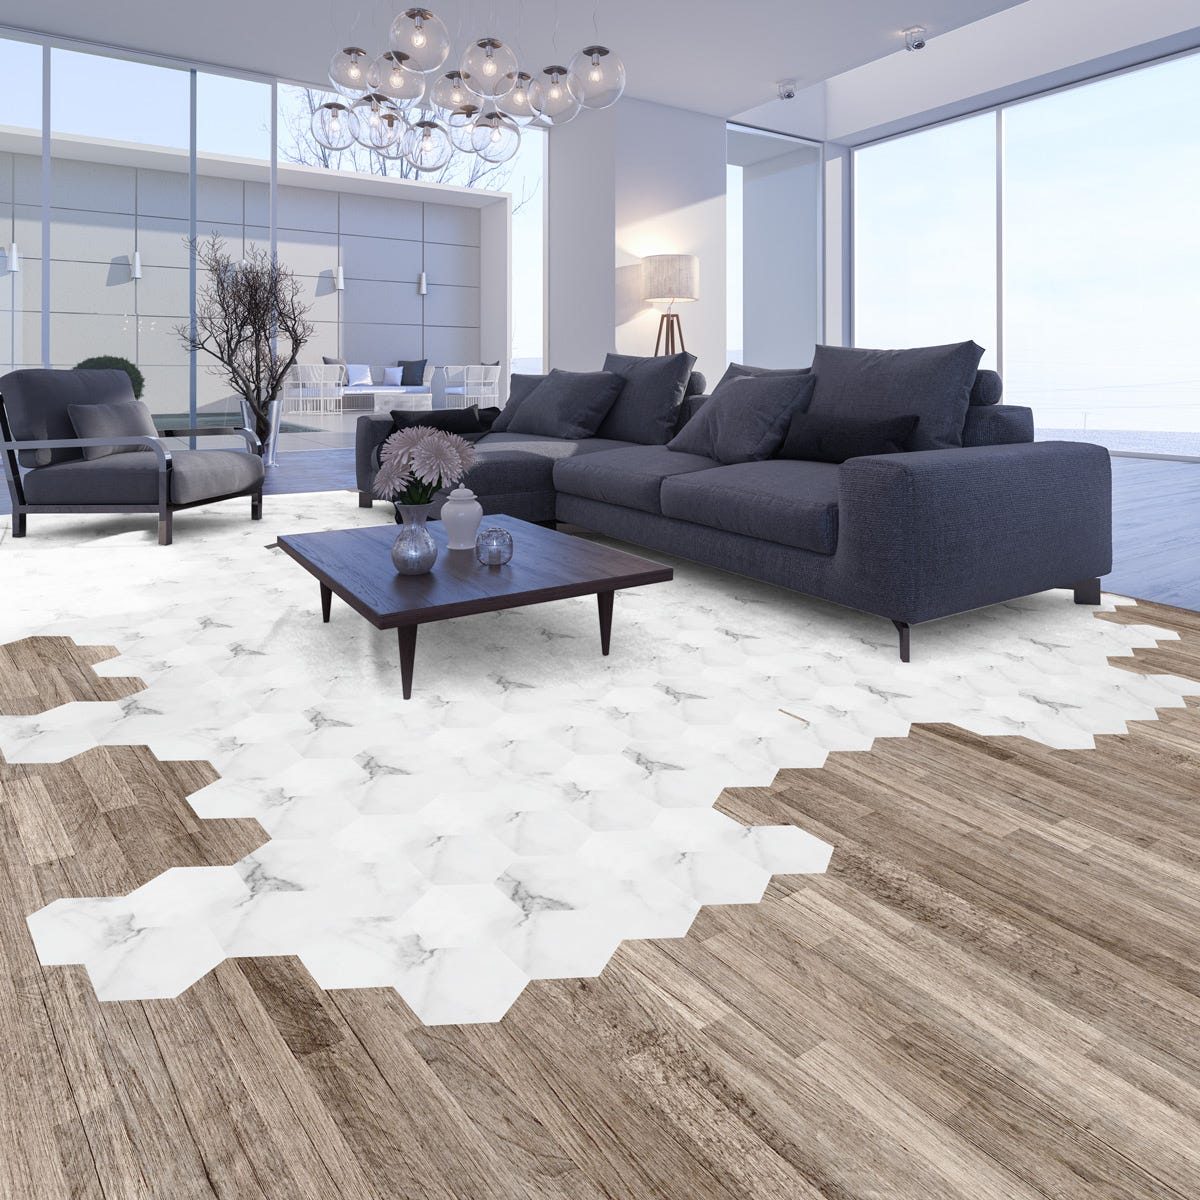 suelos vinílicos adhesivos - imitacion madera  Small living room decor,  Living room designs, Living room decor on a budget